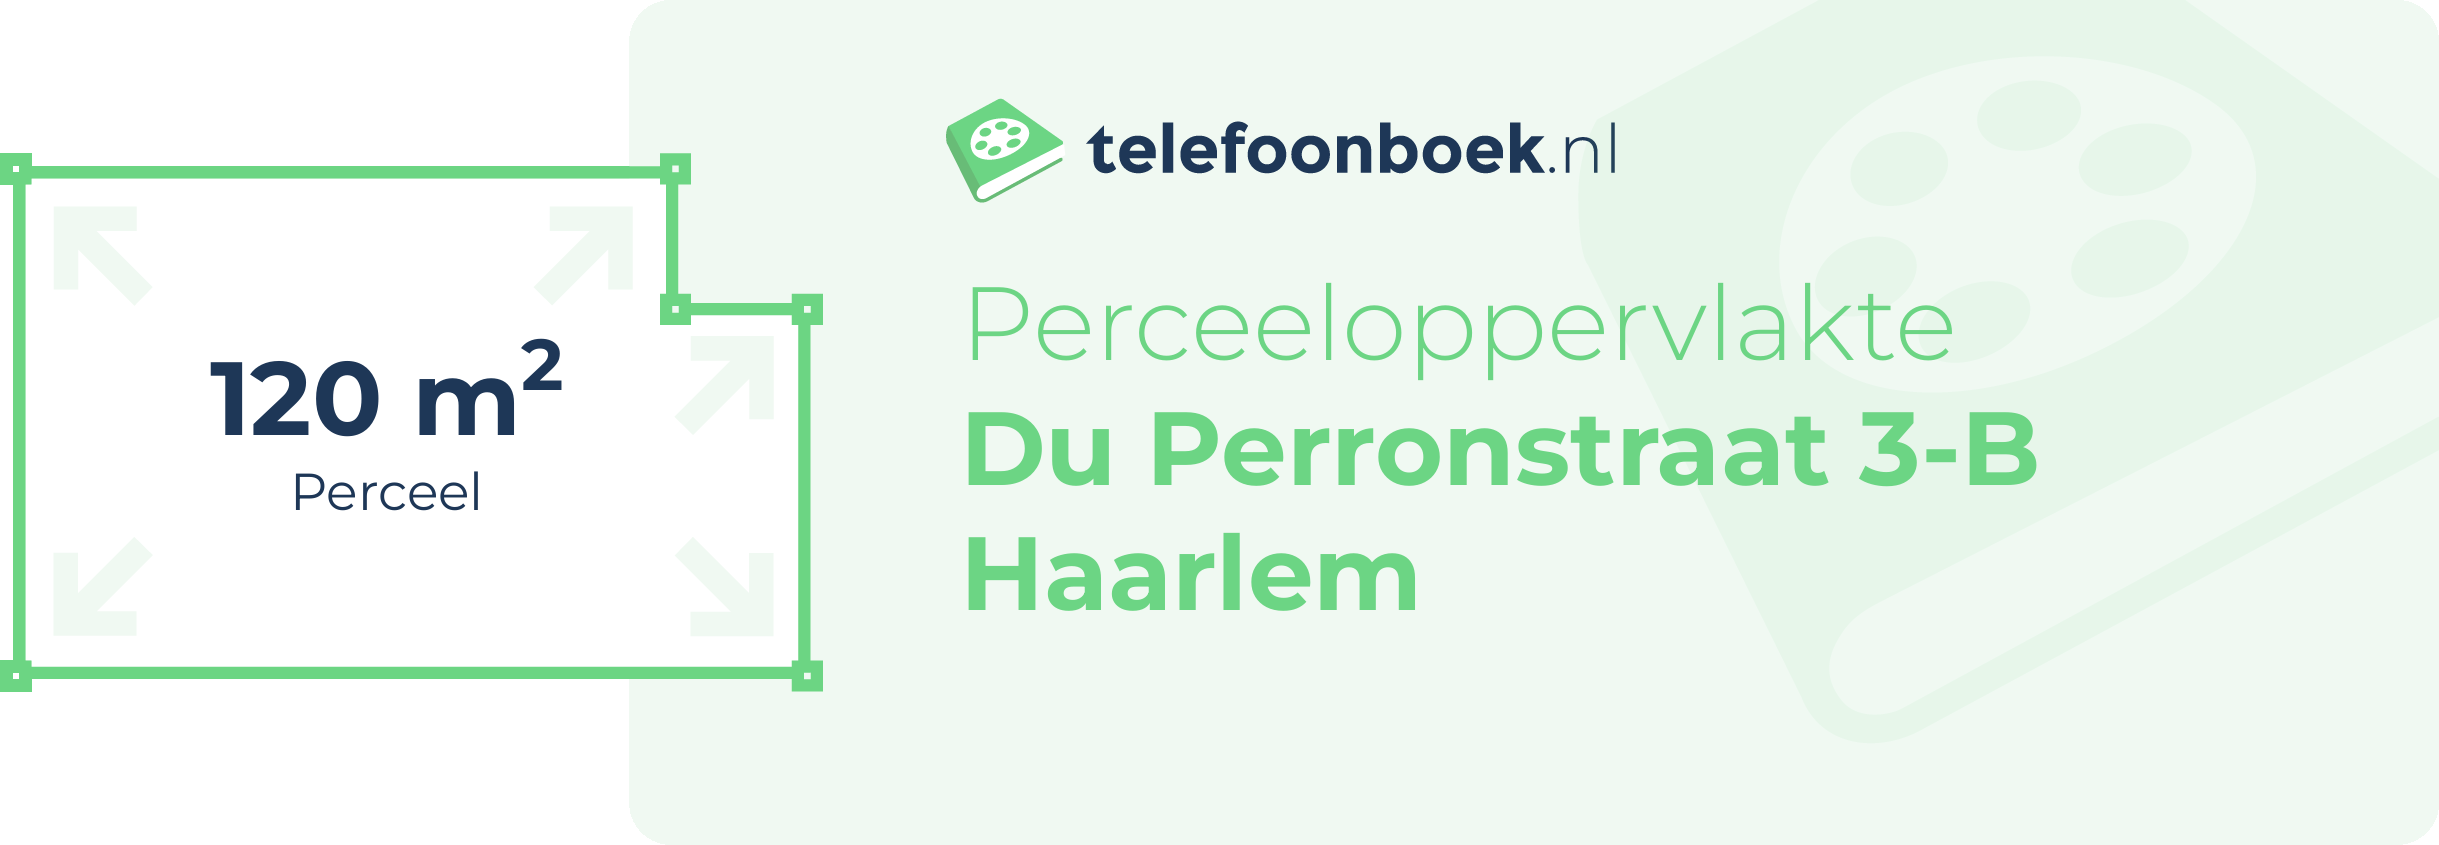 Perceeloppervlakte Du Perronstraat 3-B Haarlem